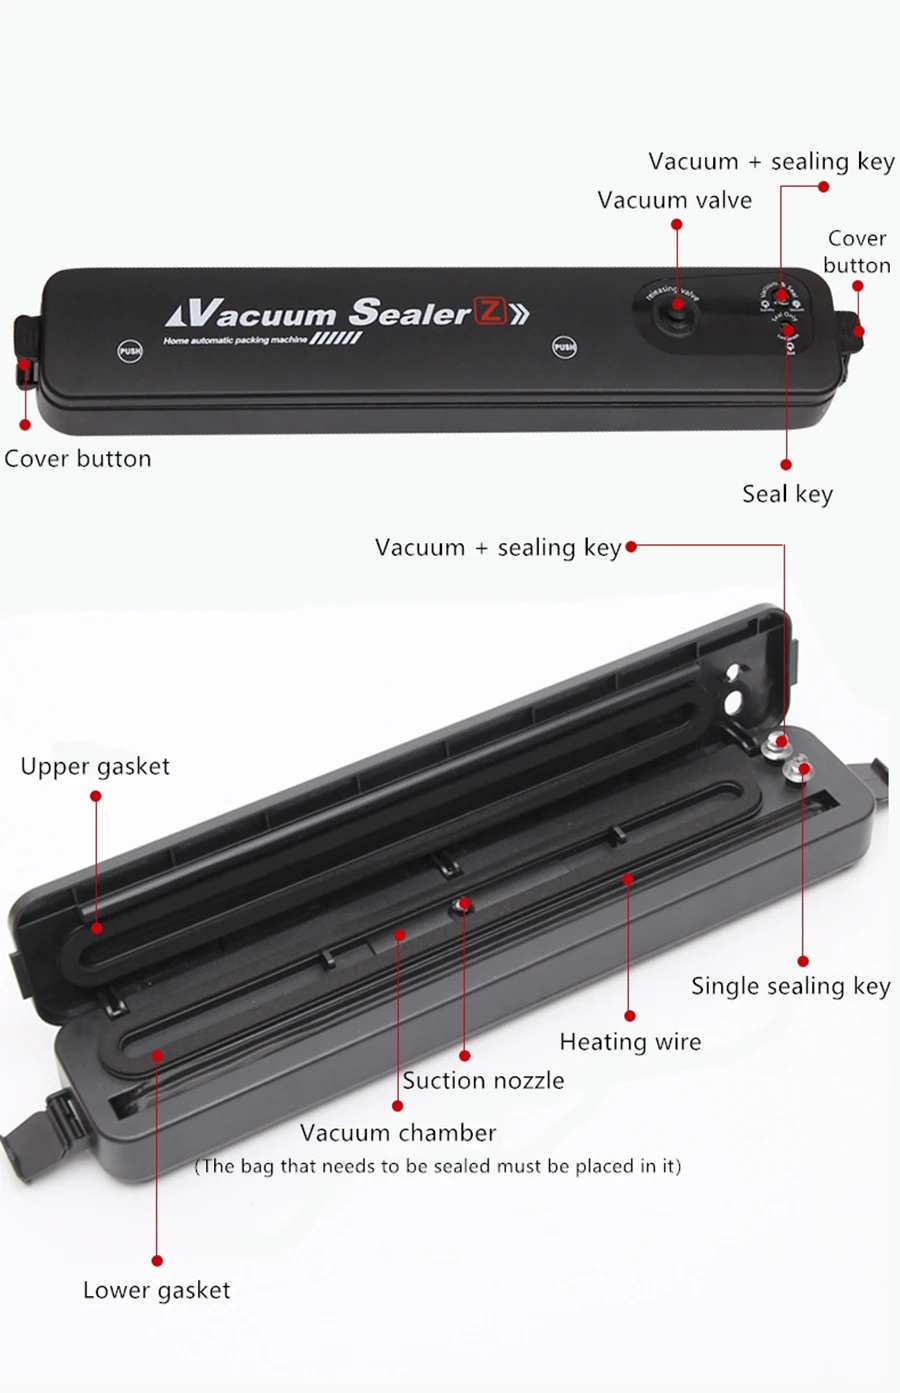 Vacuum Sealer Machine